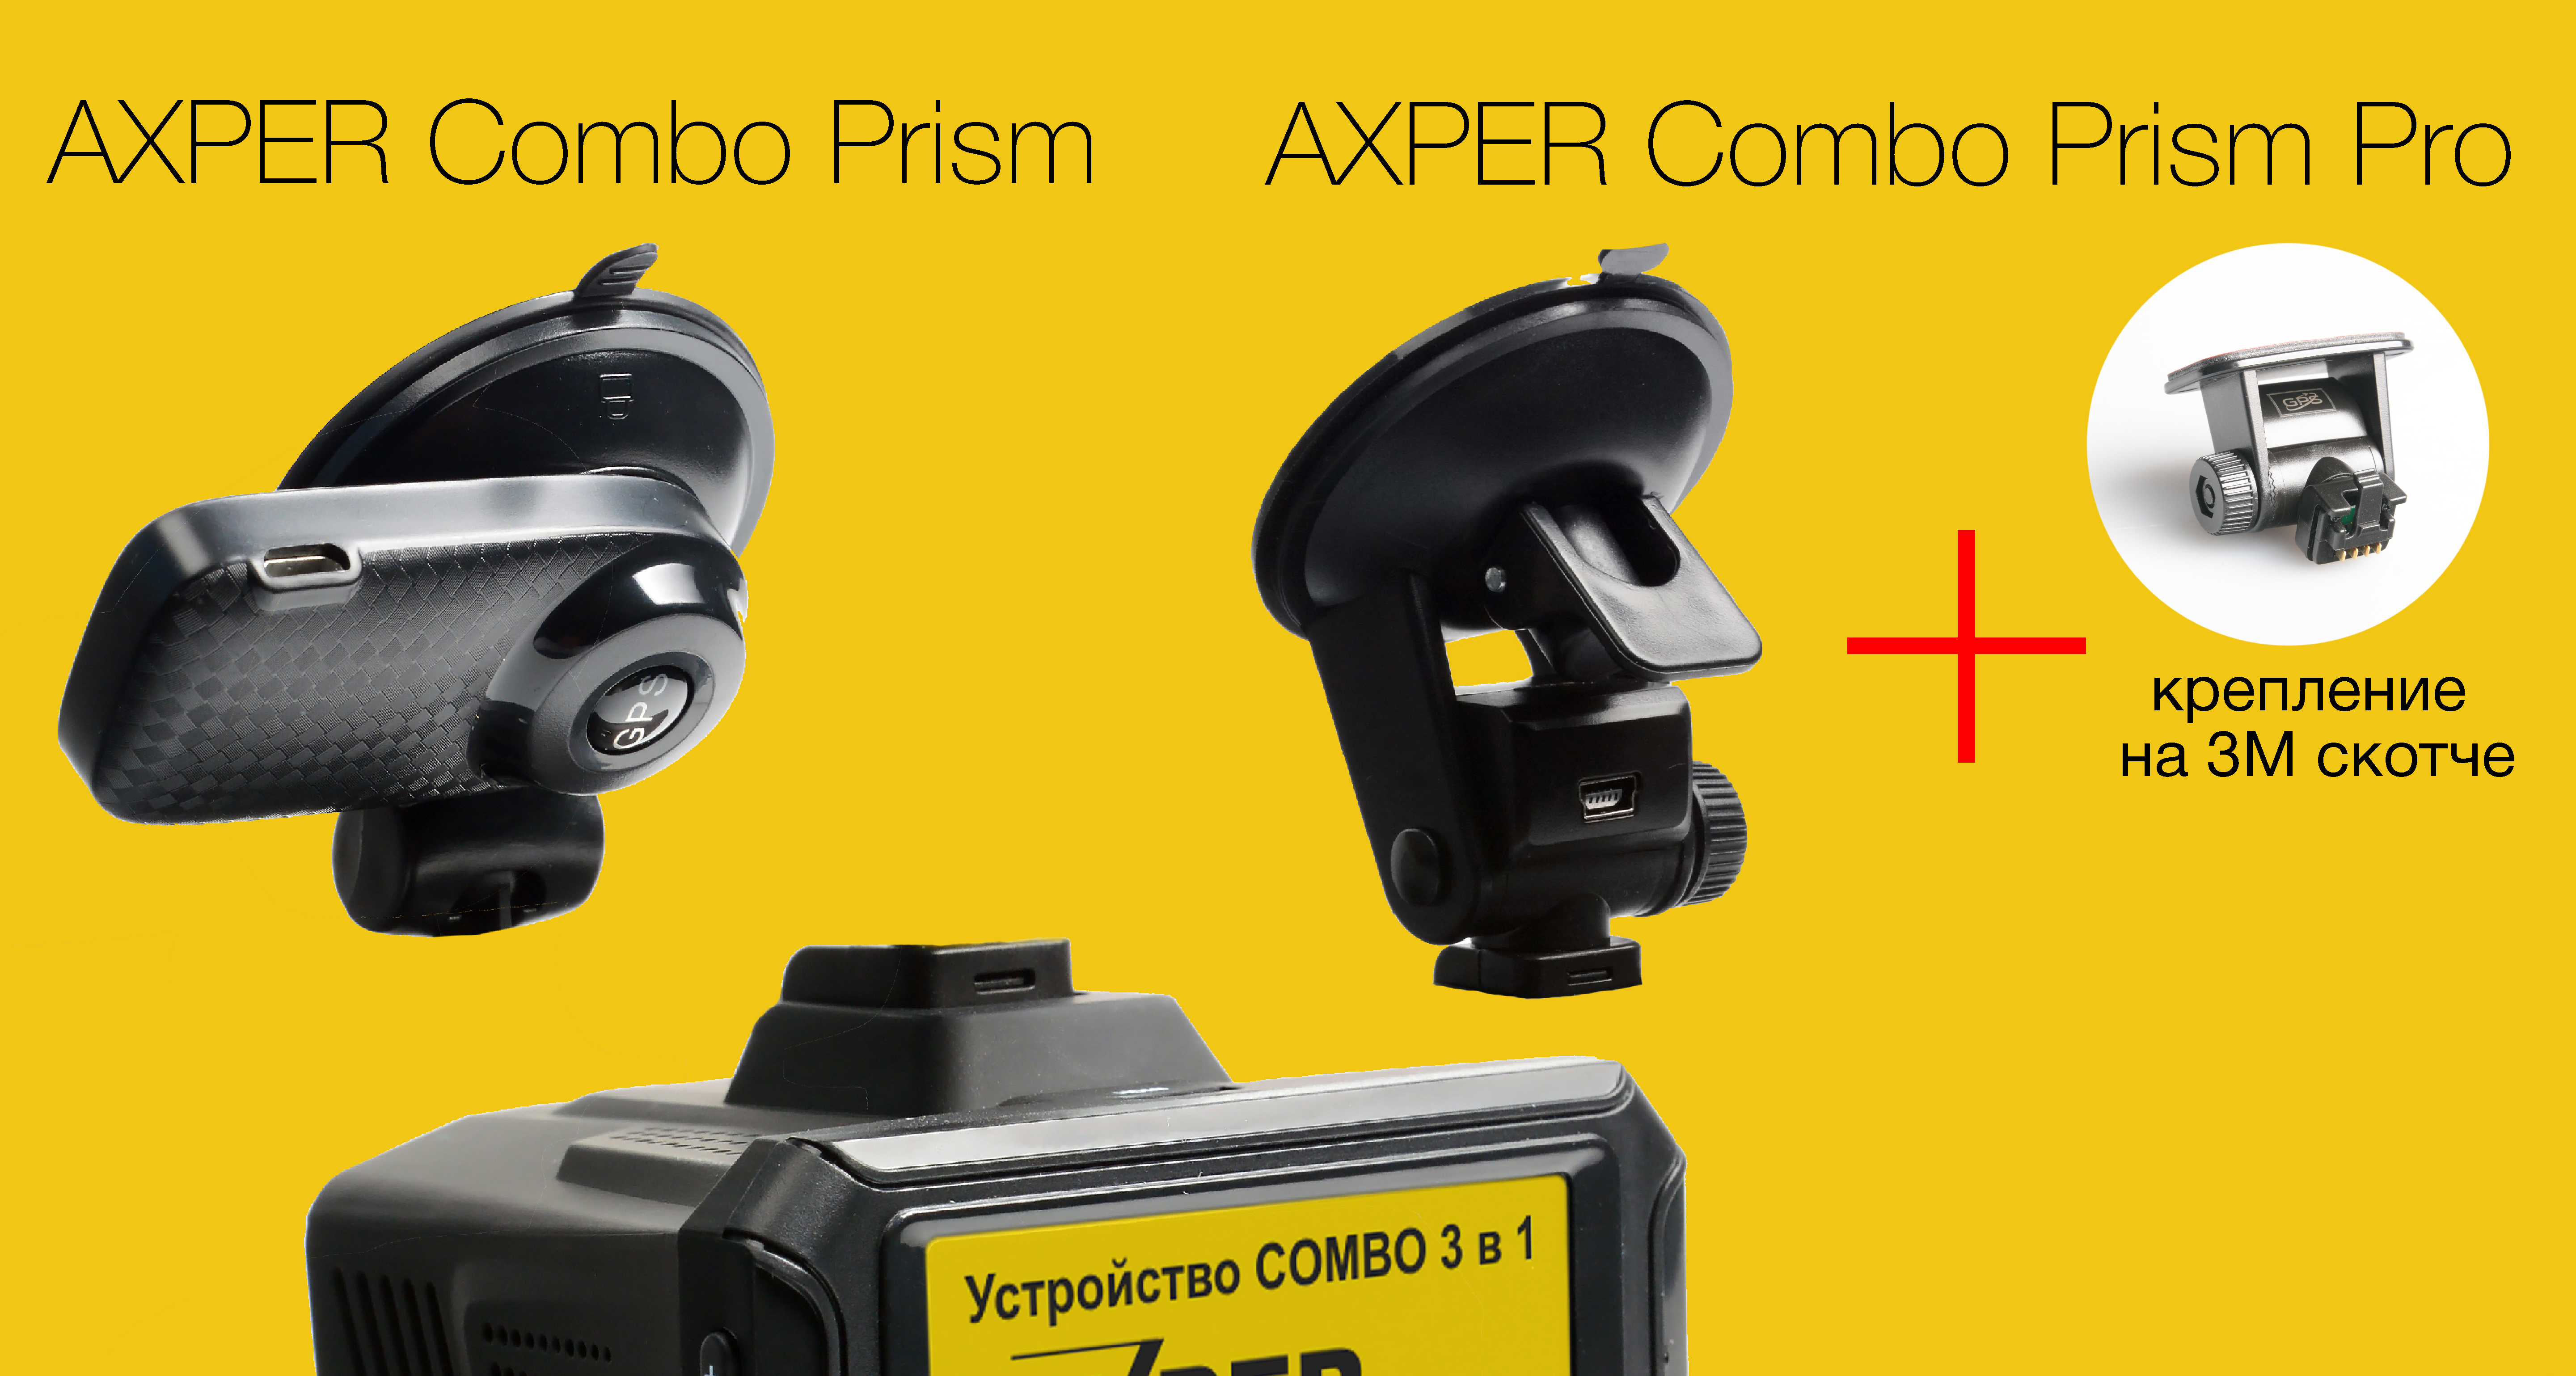 AXPER Combo Prism